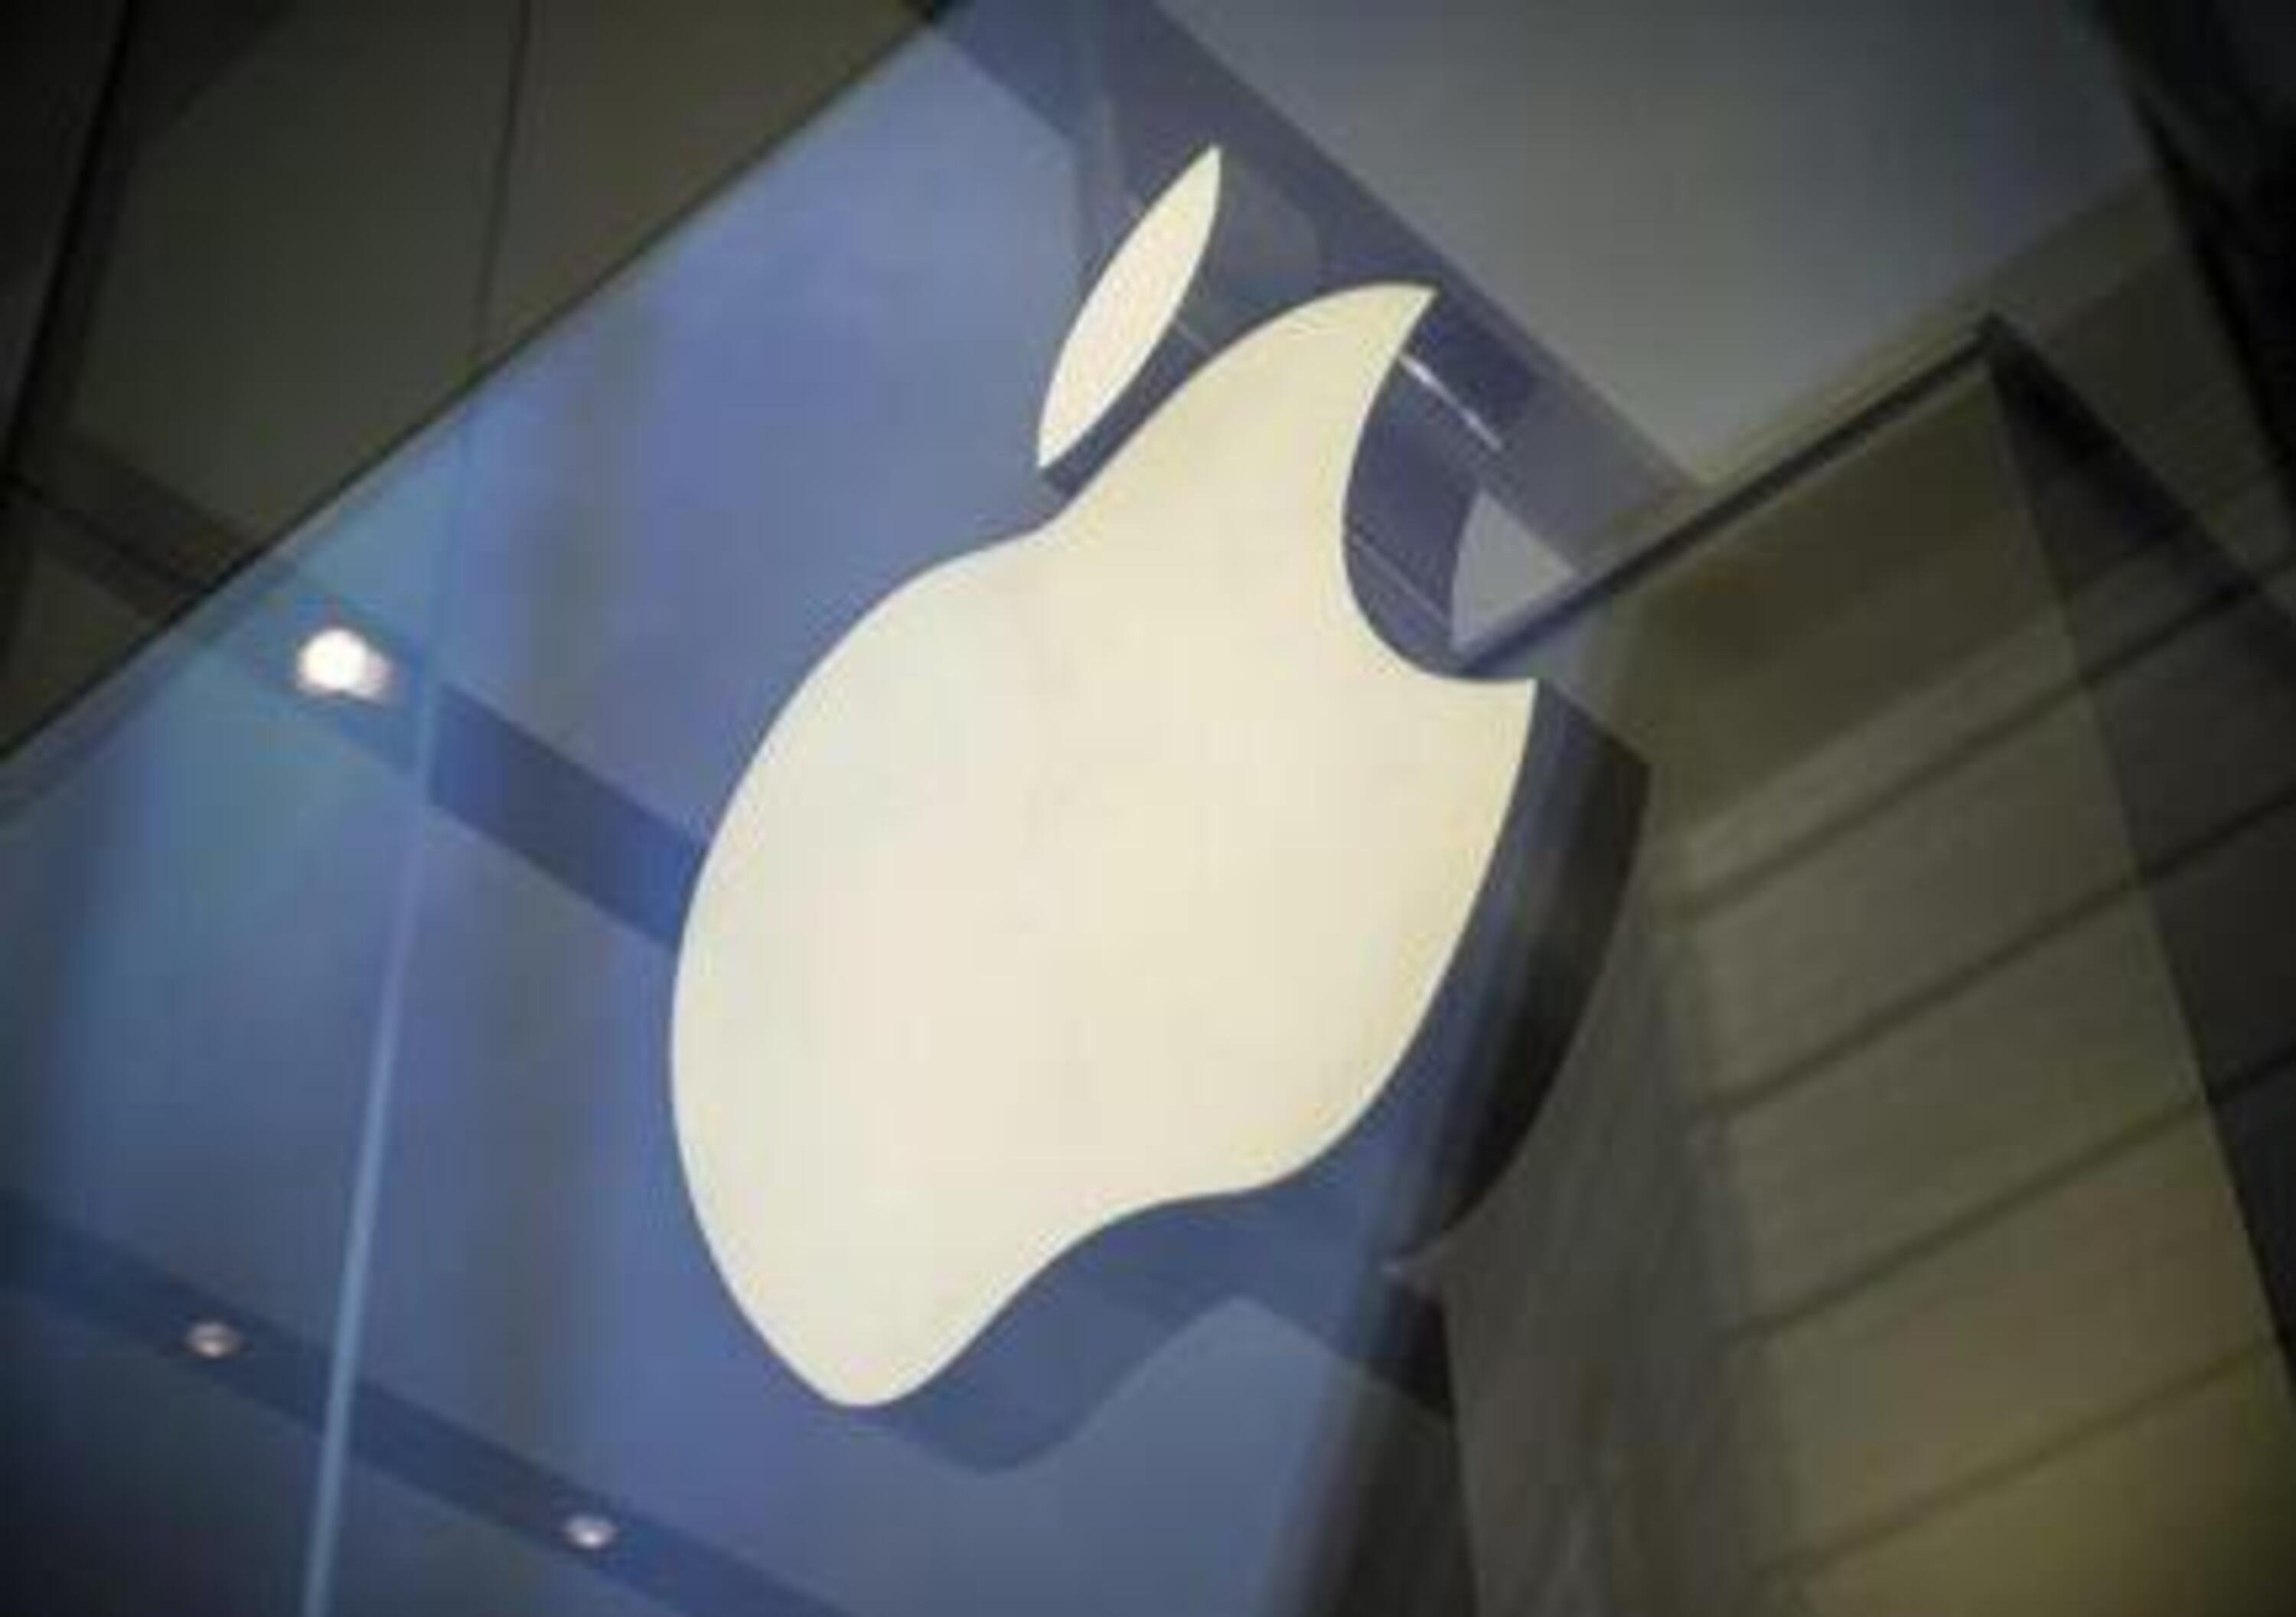 Apple: un laboratorio segreto a Berlino lavora sulla iCar